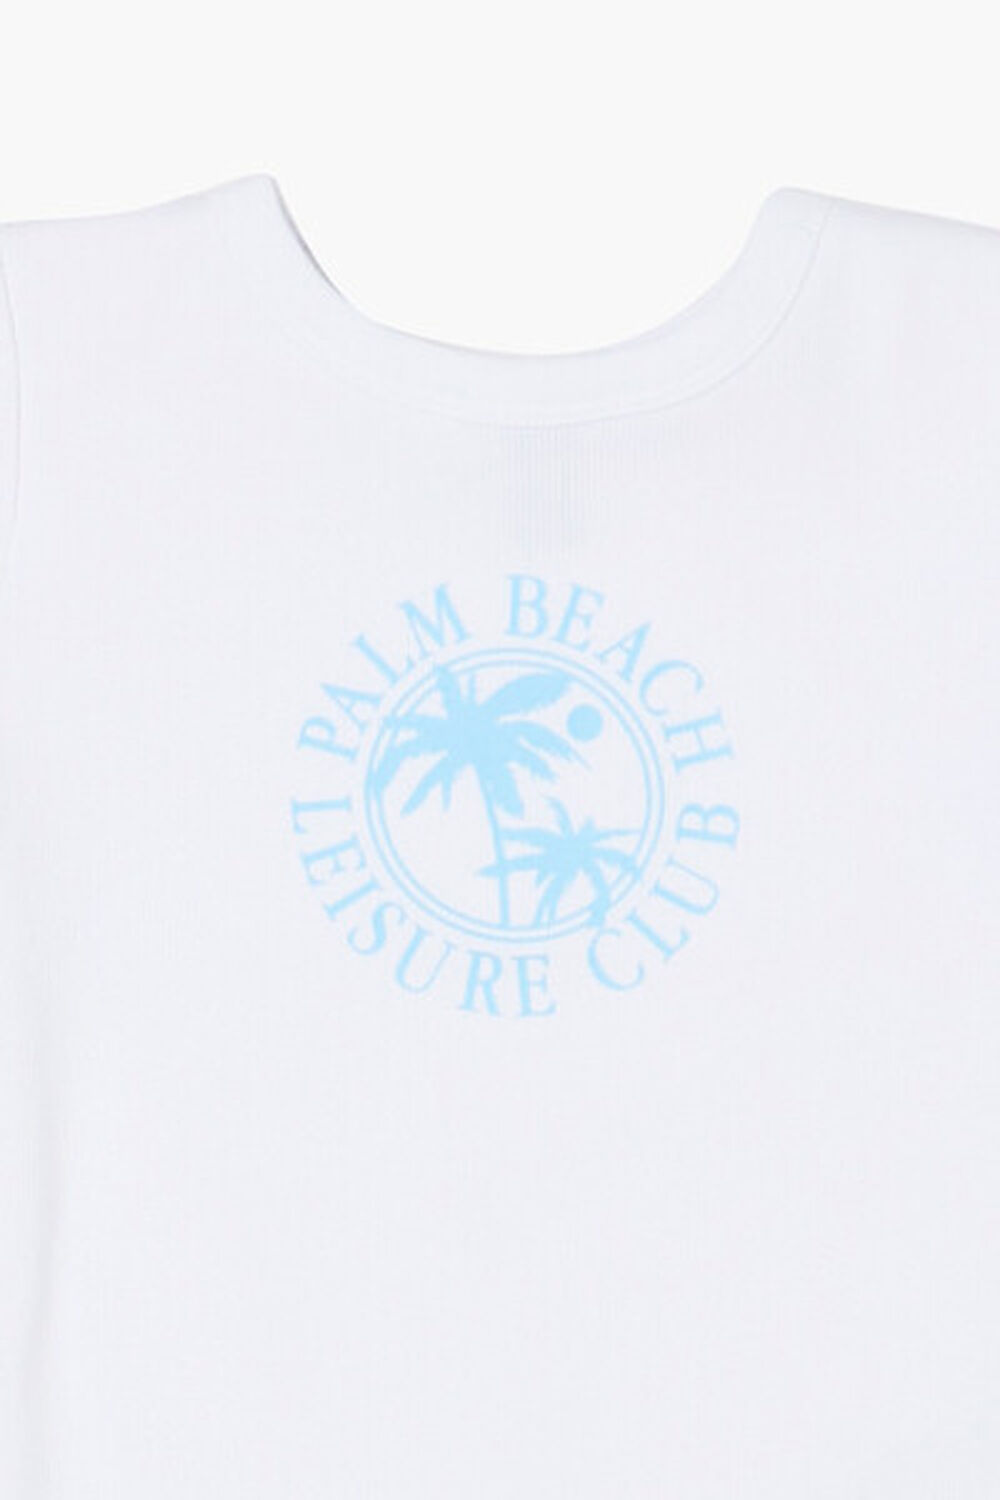 WHITE/MULTI Girls Palm Beach Graphic Tee (Kids), image 3